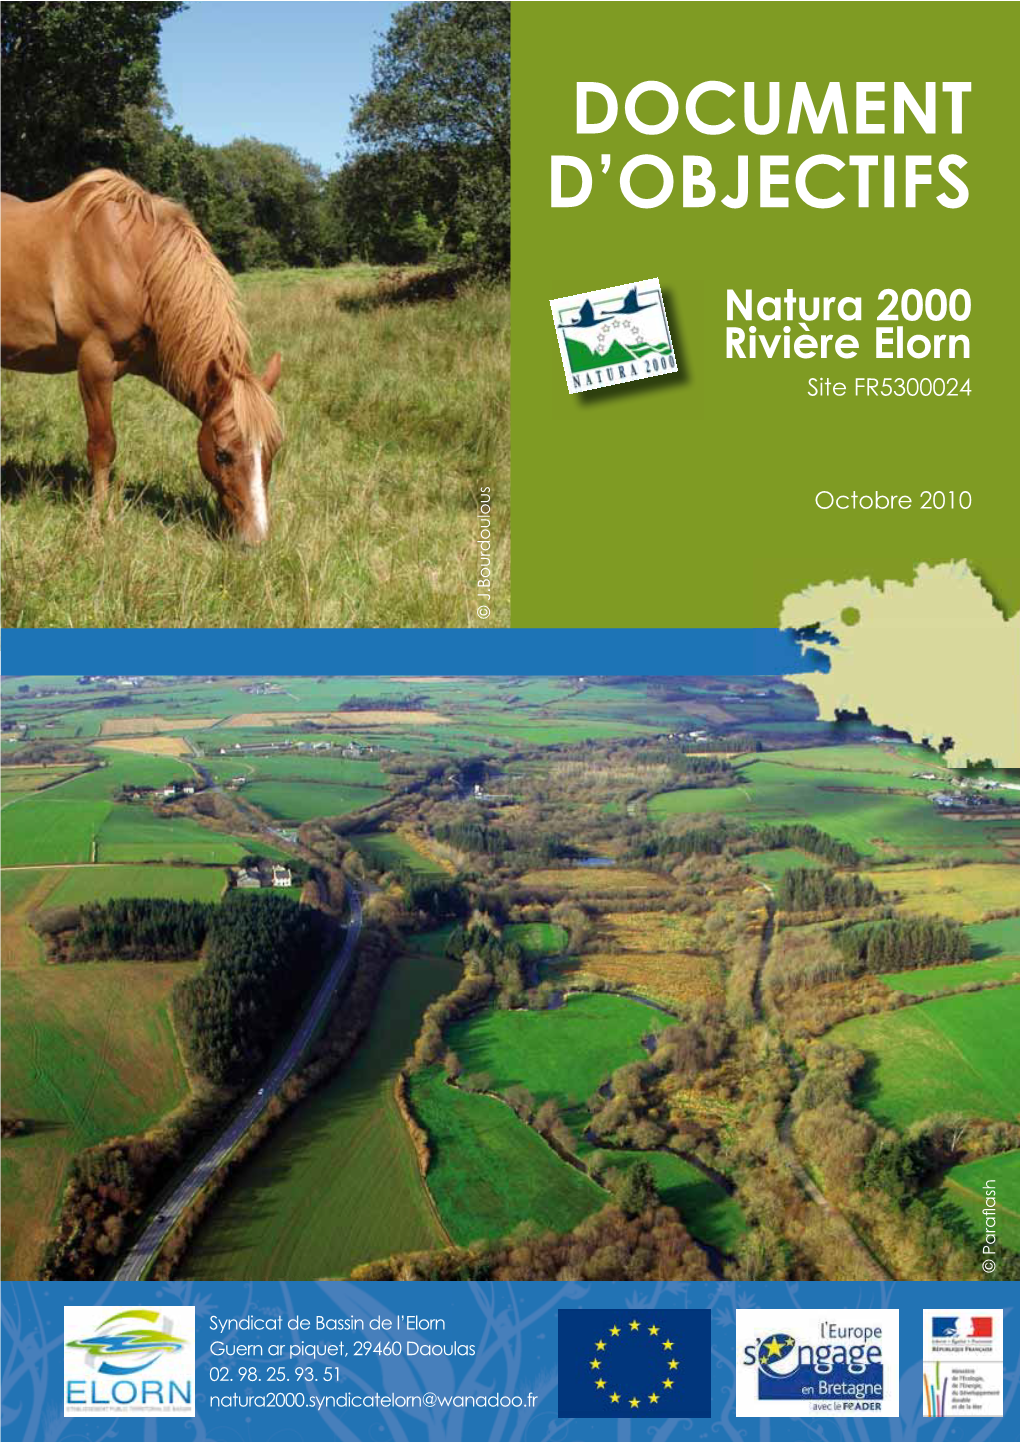 DOCUMENT-D-OBJECTIFS.-Natura-2000-Rivière-Elorn.-Site-FR5300024.-Octobre-2010.Pdf